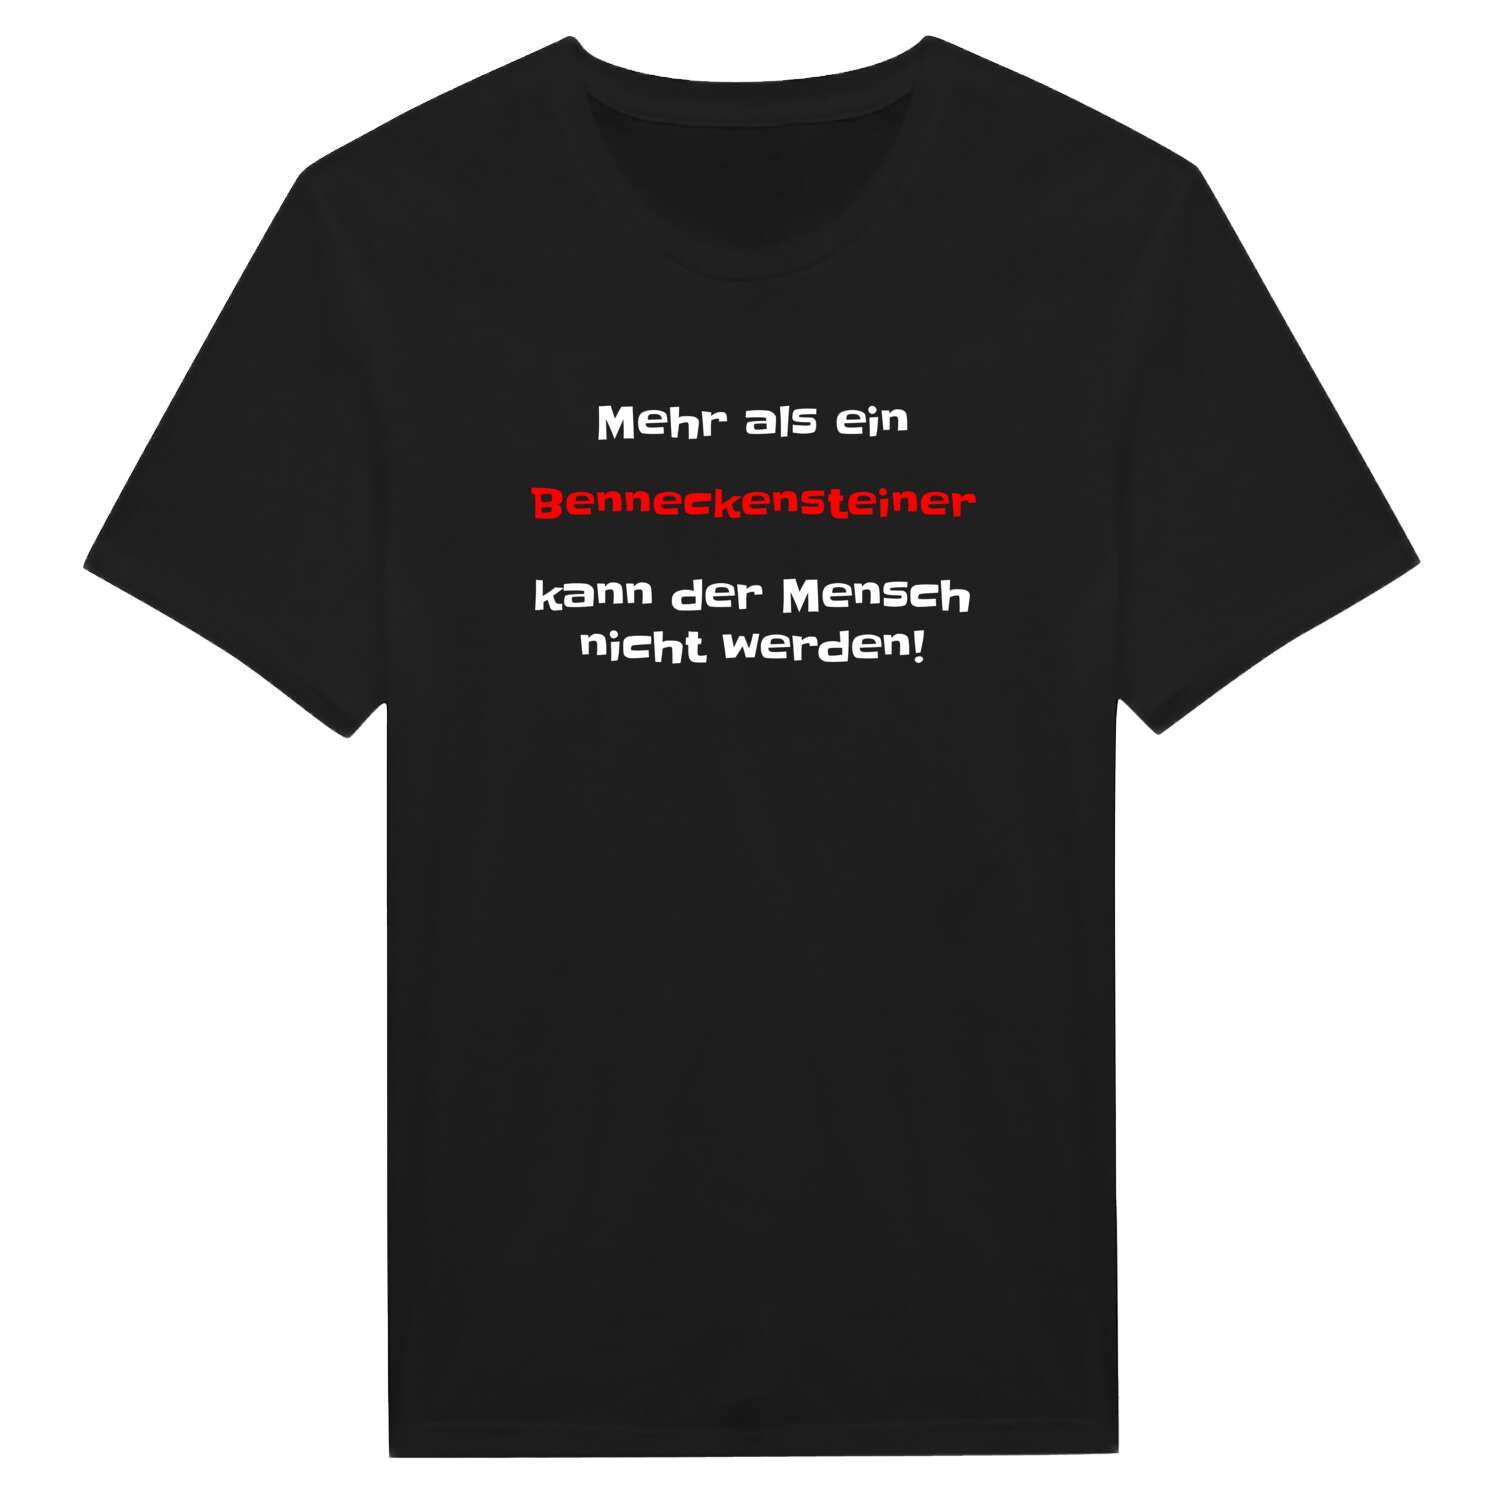 Benneckenstein T-Shirt »Mehr als ein«